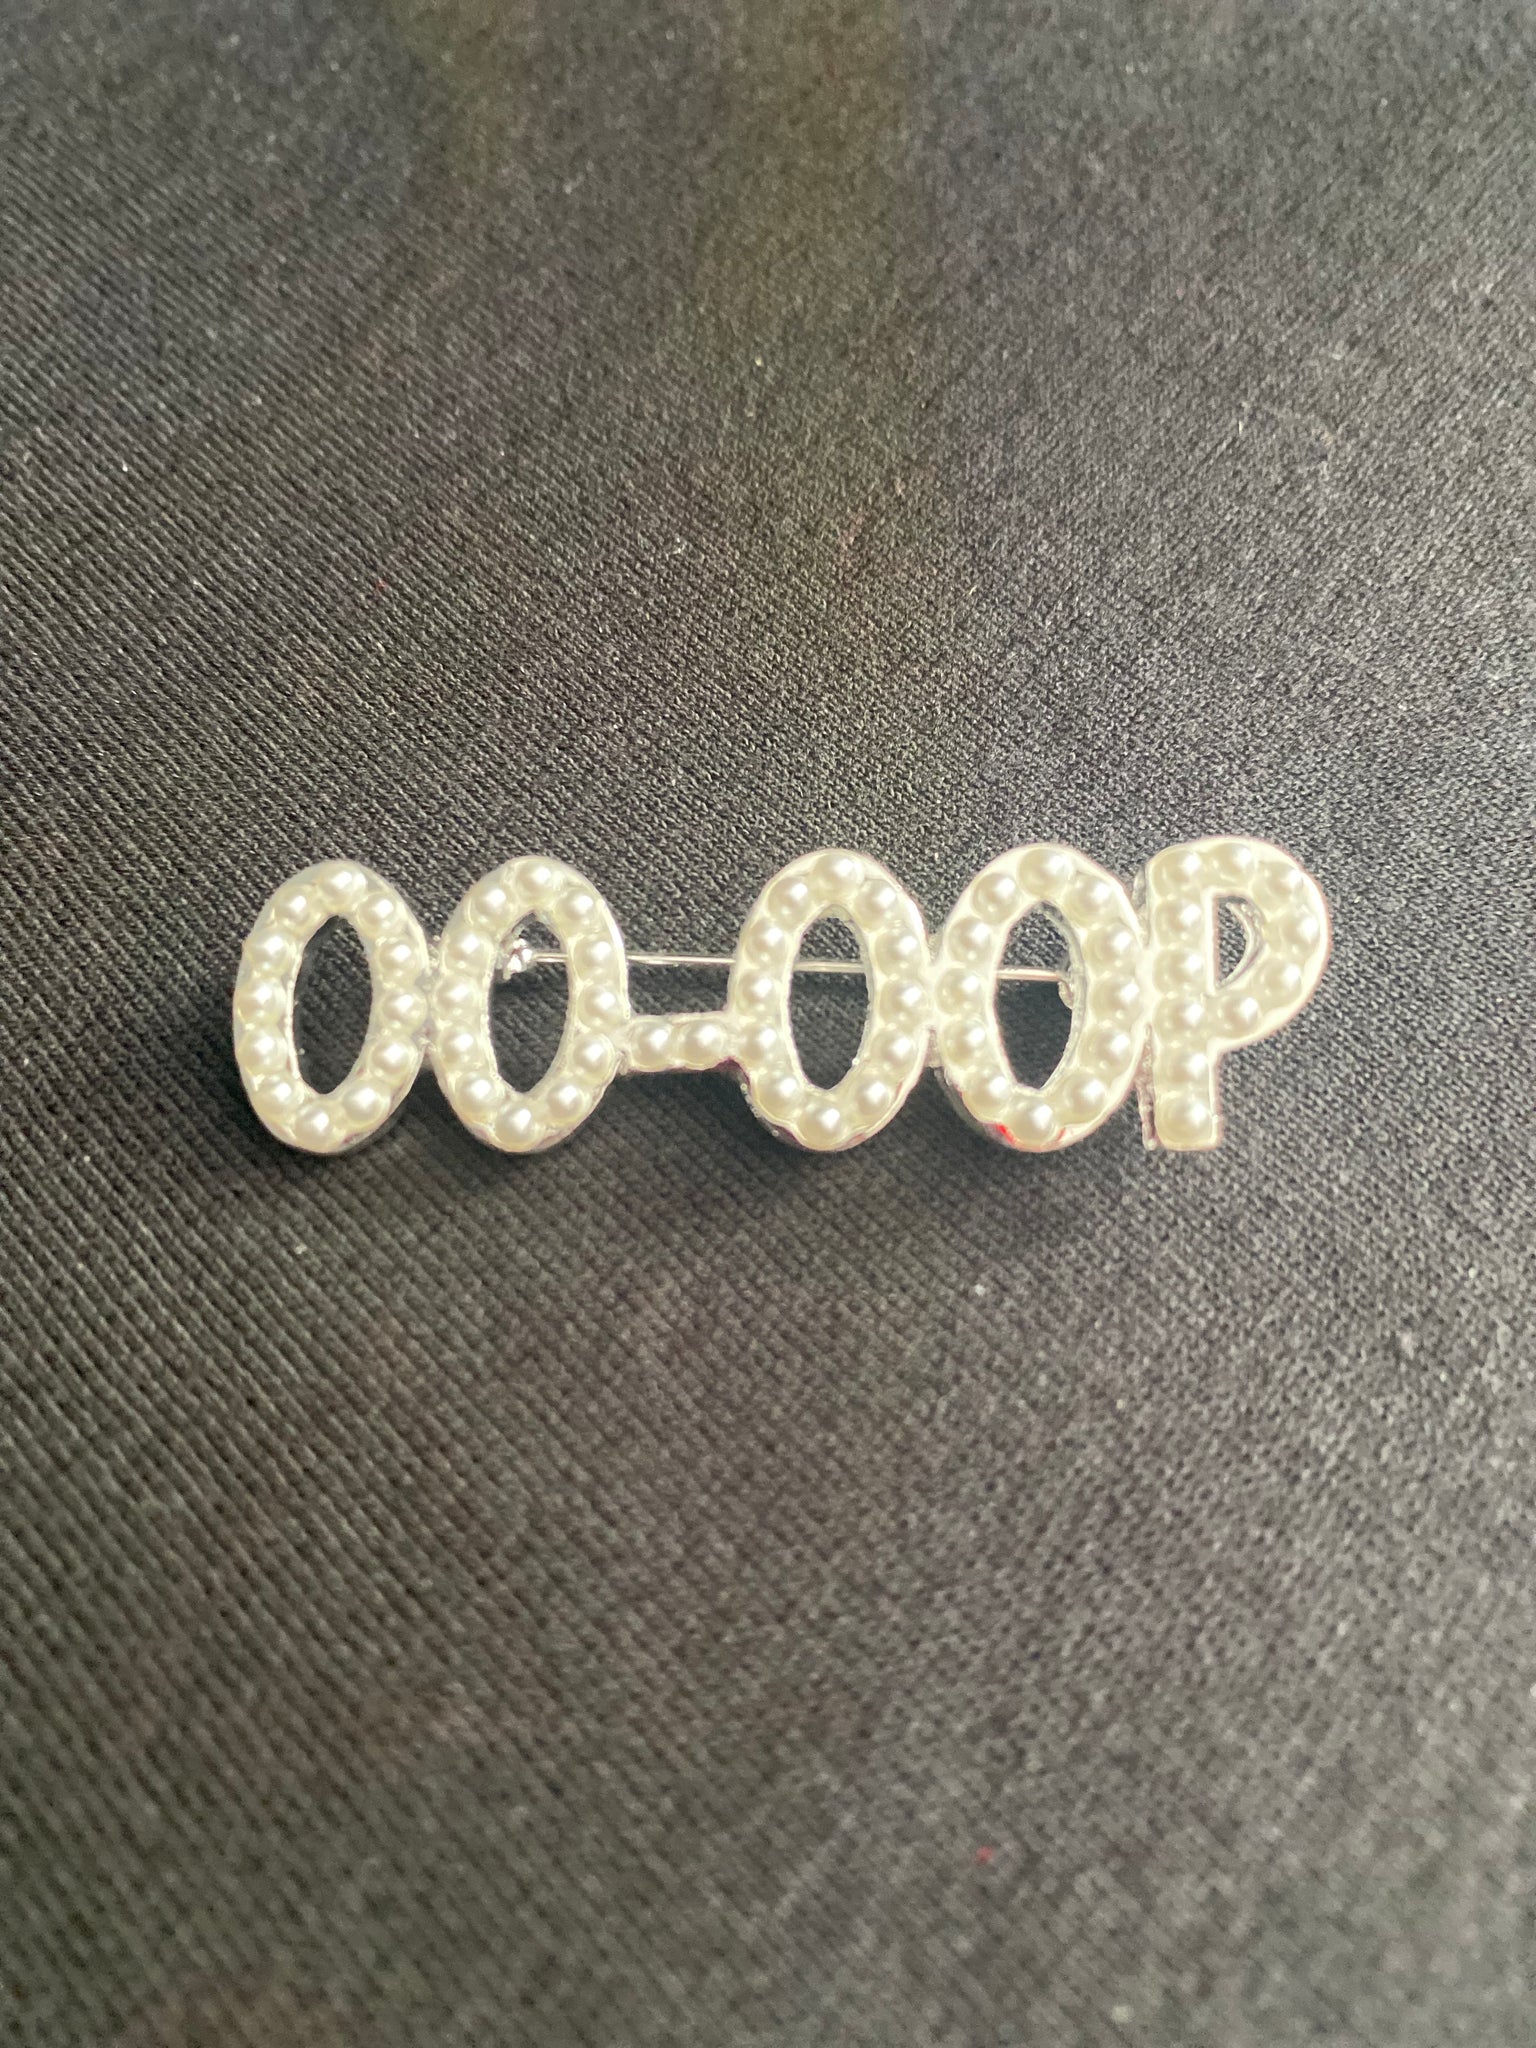 Oo-Oop Pearl Lapel Pin